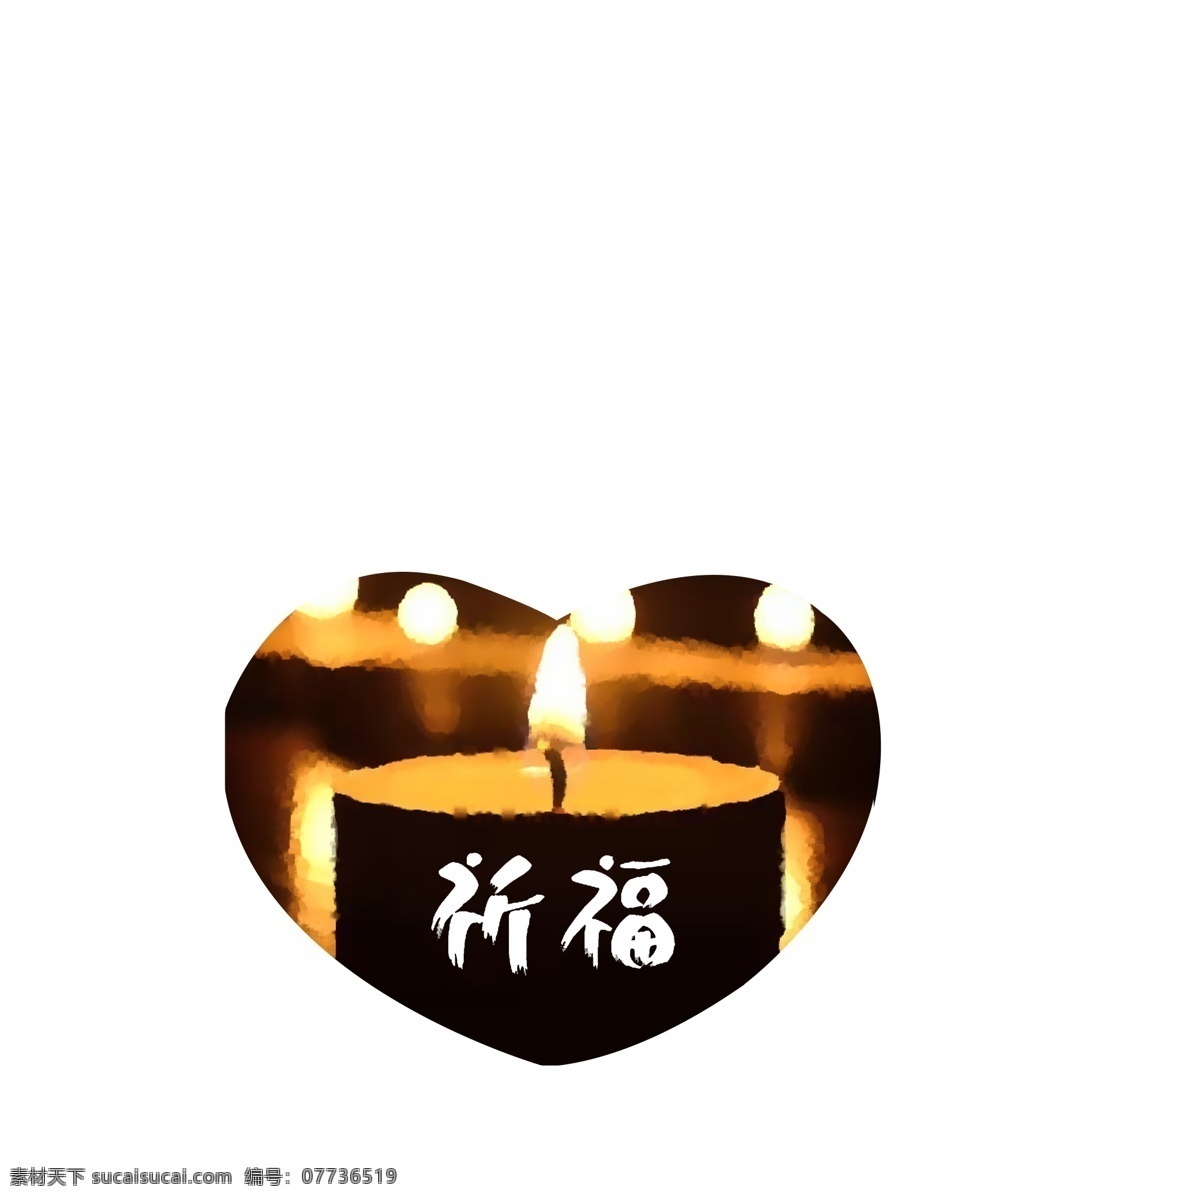 地震 蜡烛 祈祷 配 图 地震祈祷 祈福 火光 为人民祈福 为灾区祈福 里 人民